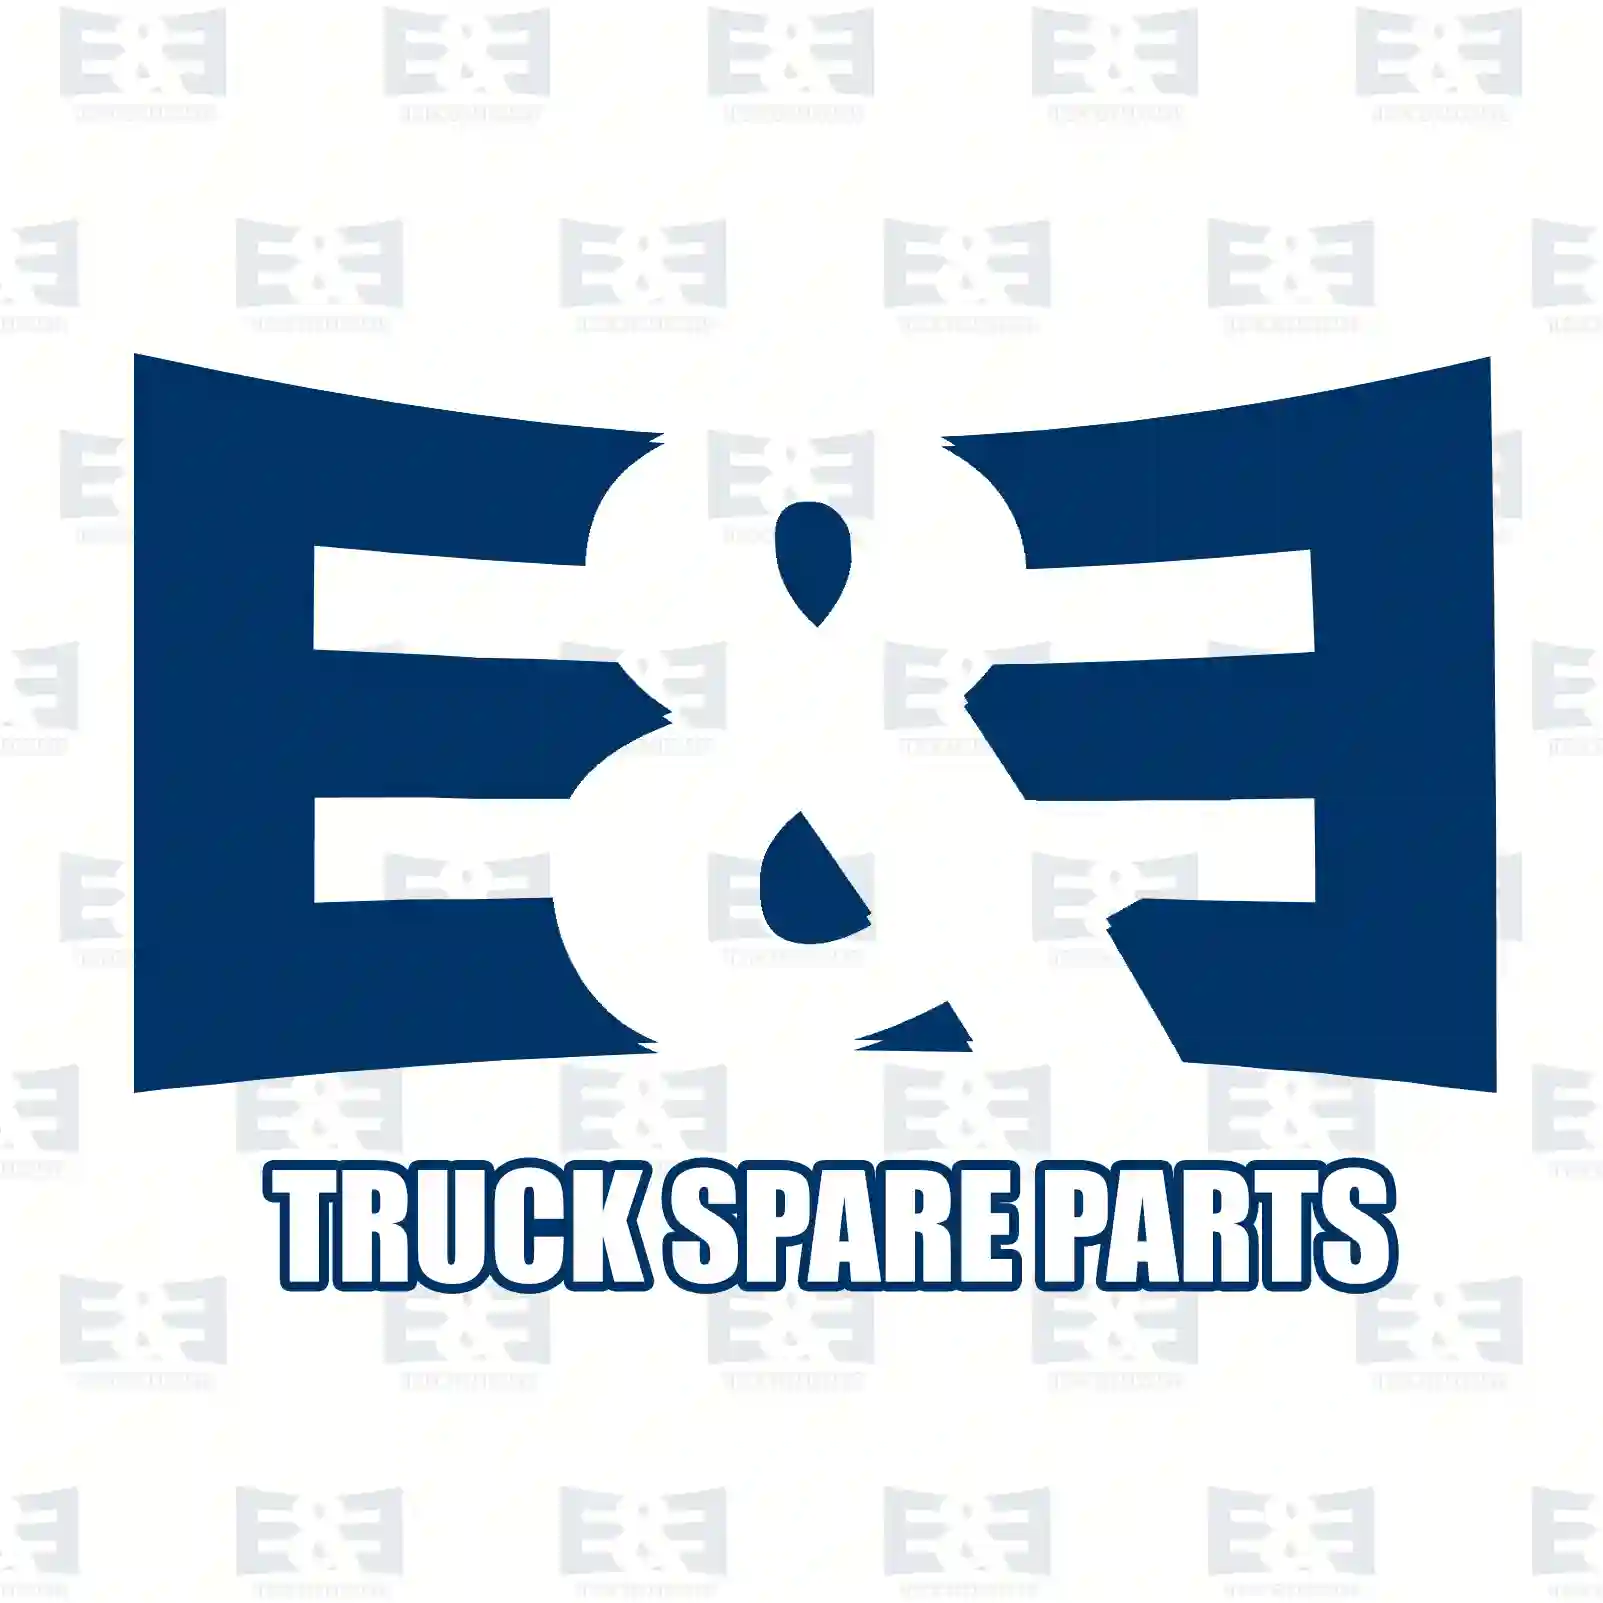 ABS sensor, rear, right, 2E2298719, 4545A2, 46809773, 4545A2 ||  2E2298719 E&E Truck Spare Parts | Truck Spare Parts, Auotomotive Spare Parts ABS sensor, rear, right, 2E2298719, 4545A2, 46809773, 4545A2 ||  2E2298719 E&E Truck Spare Parts | Truck Spare Parts, Auotomotive Spare Parts